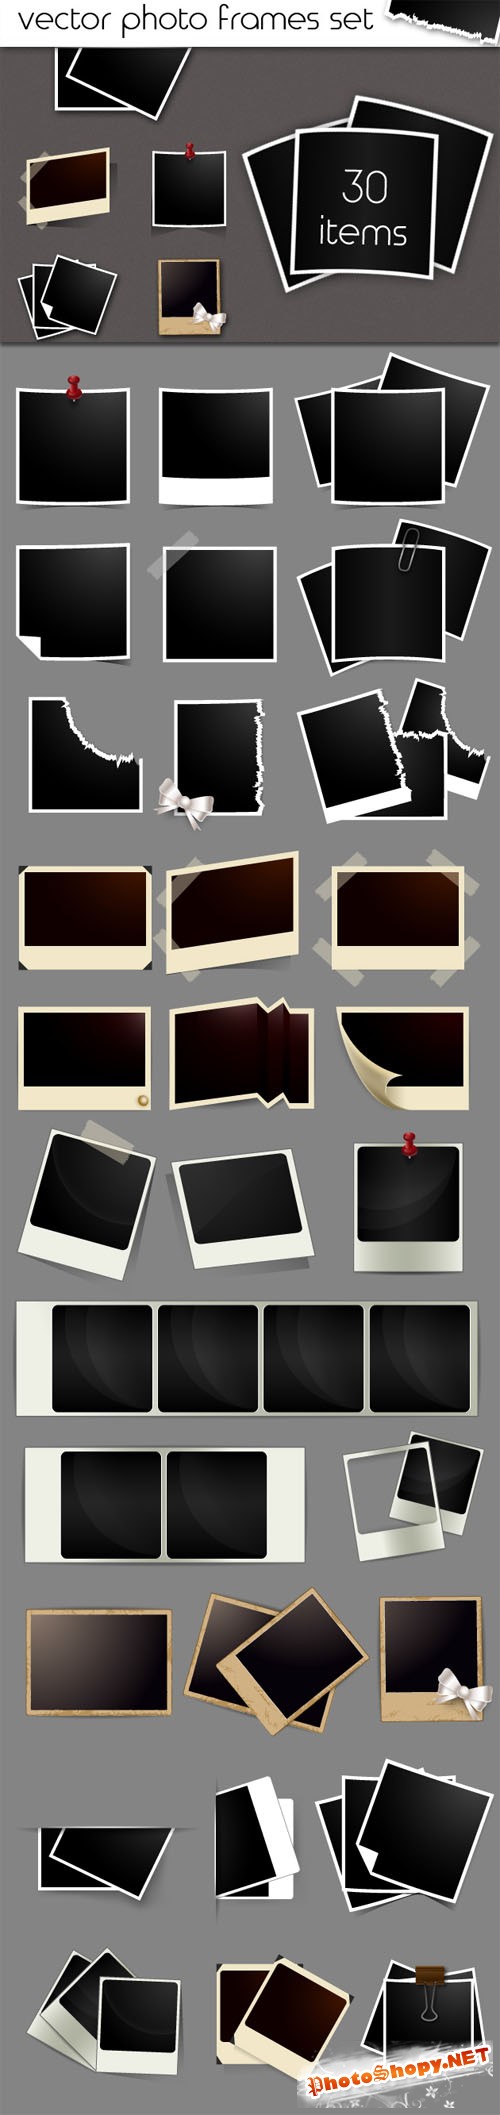 Designtnt - Vector Photo Frames Set 1